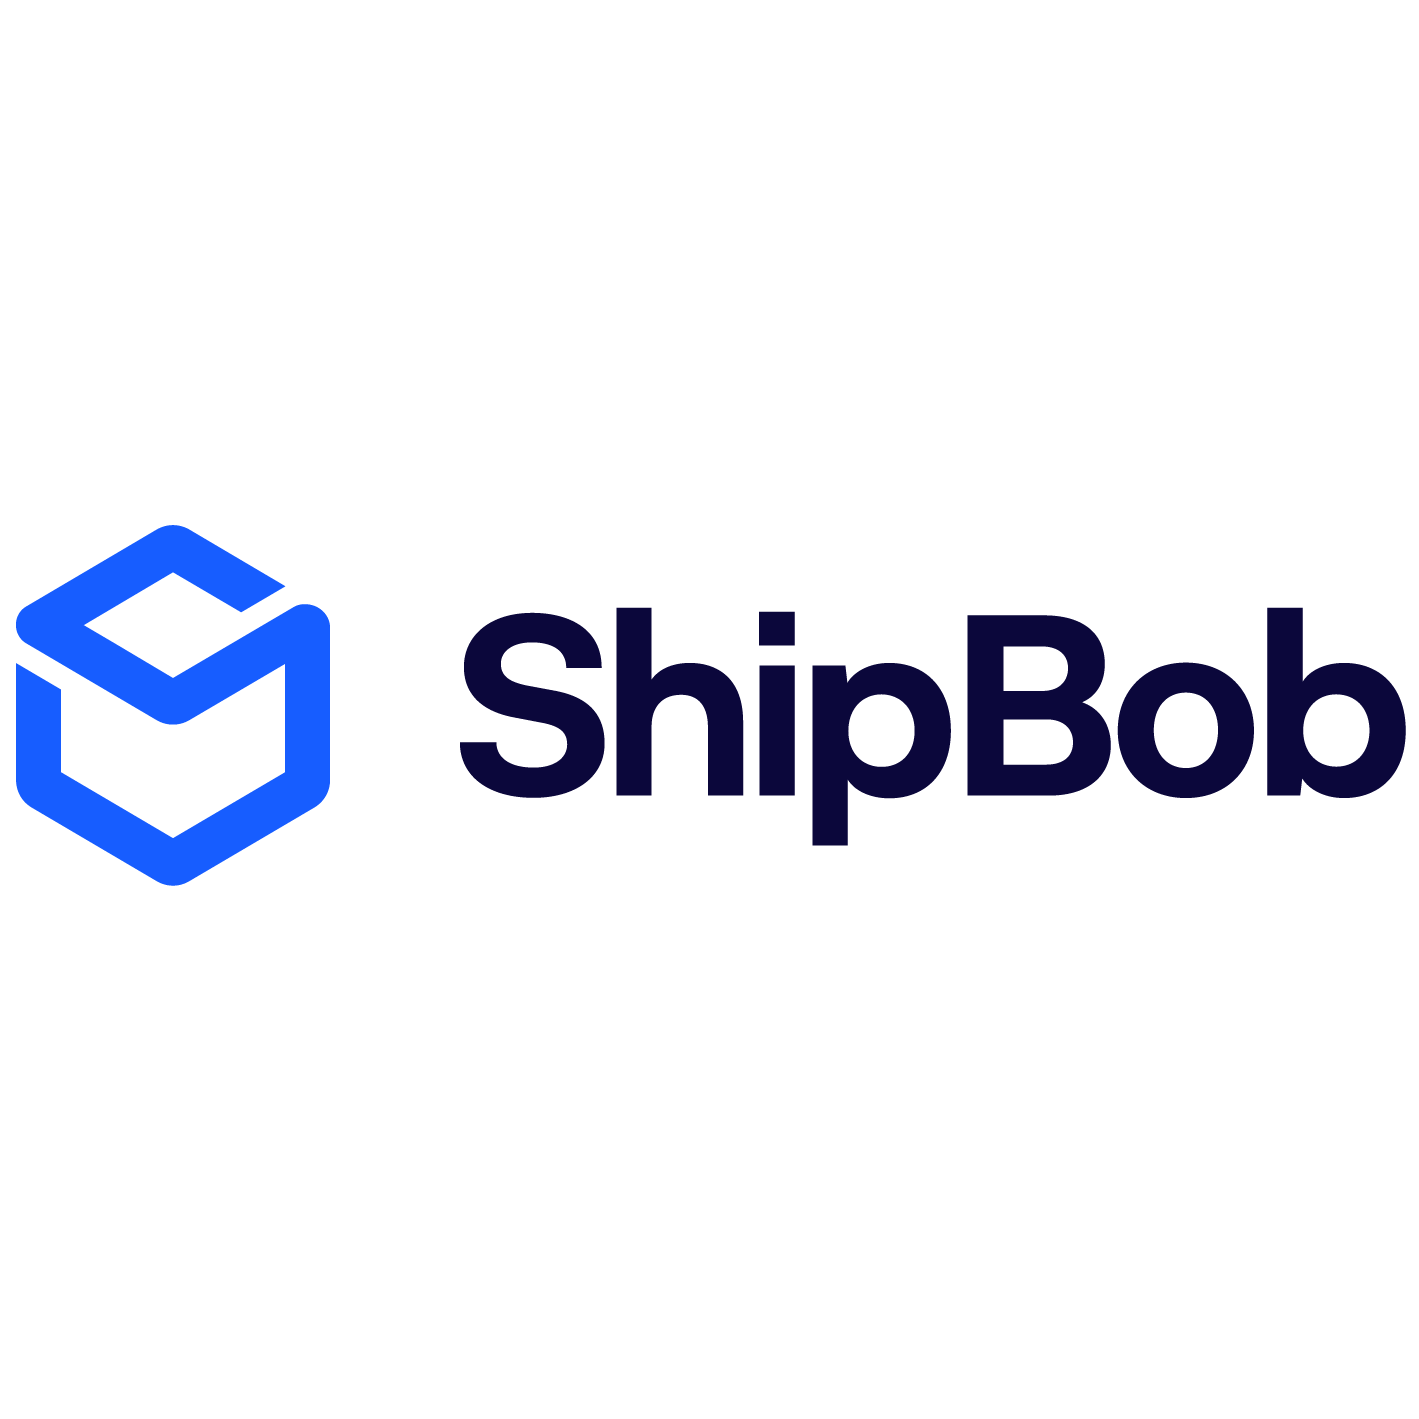 www.shipbob.com